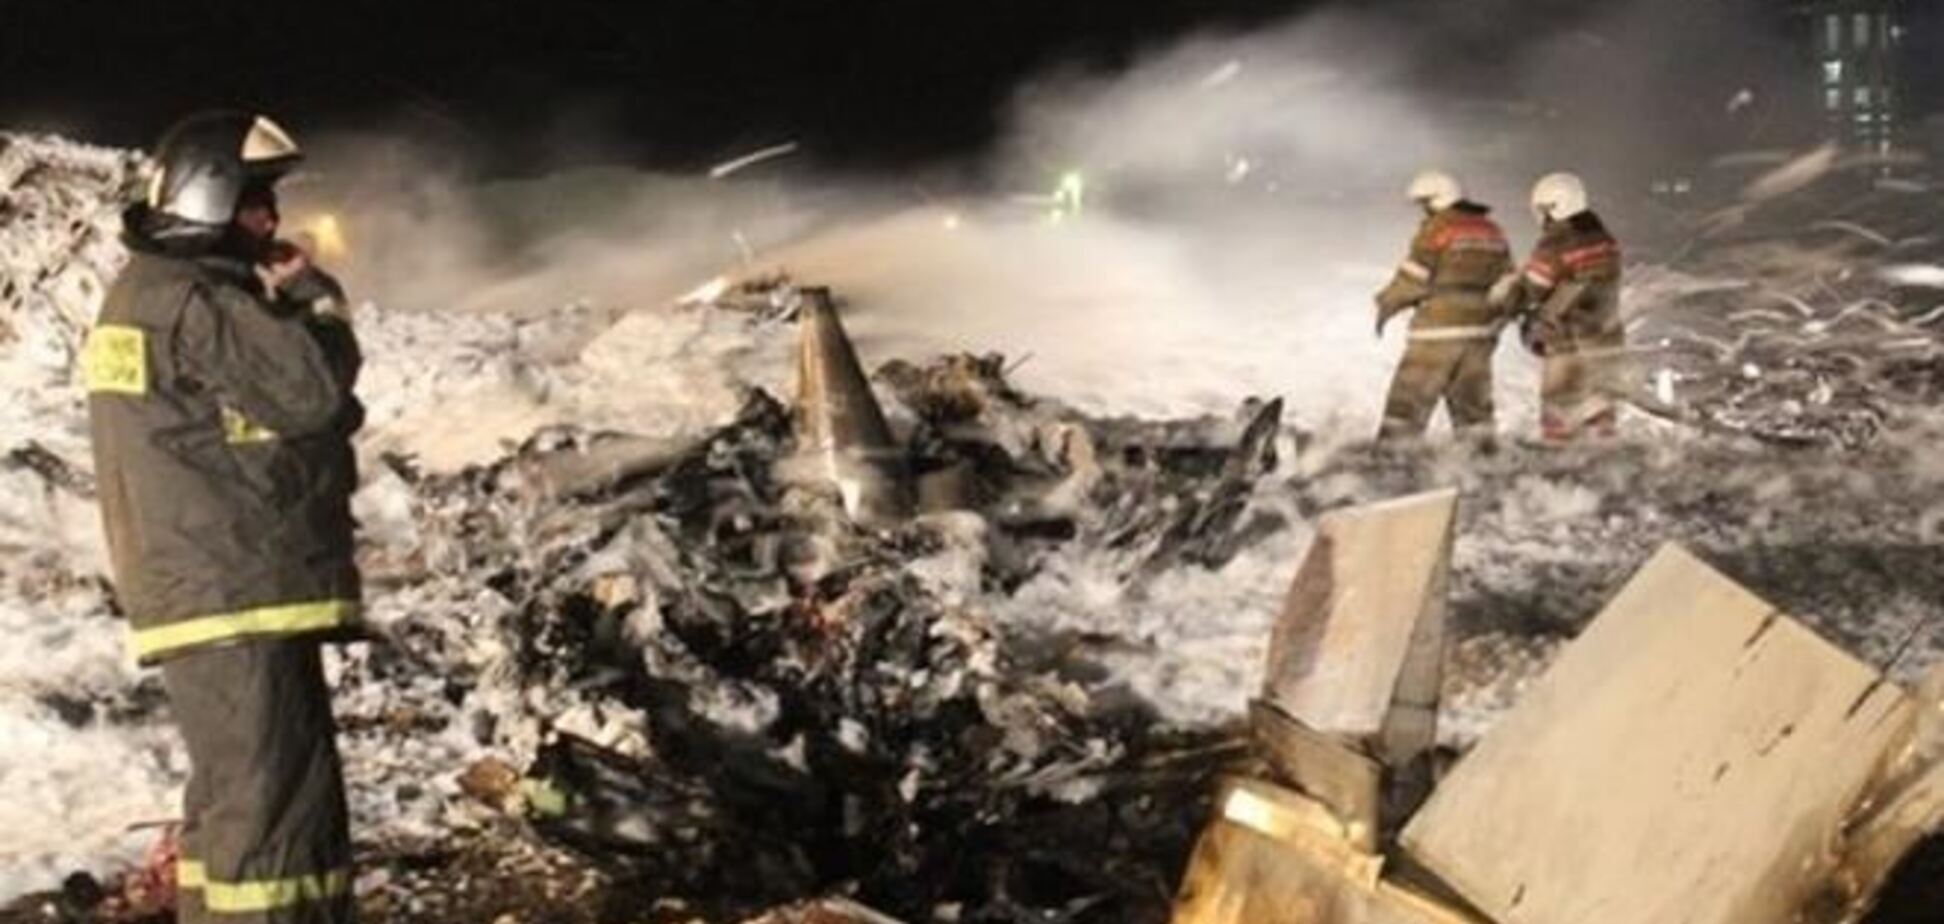 Шторм может сорвать работу следователей на месте авиакатастрофы в Казани